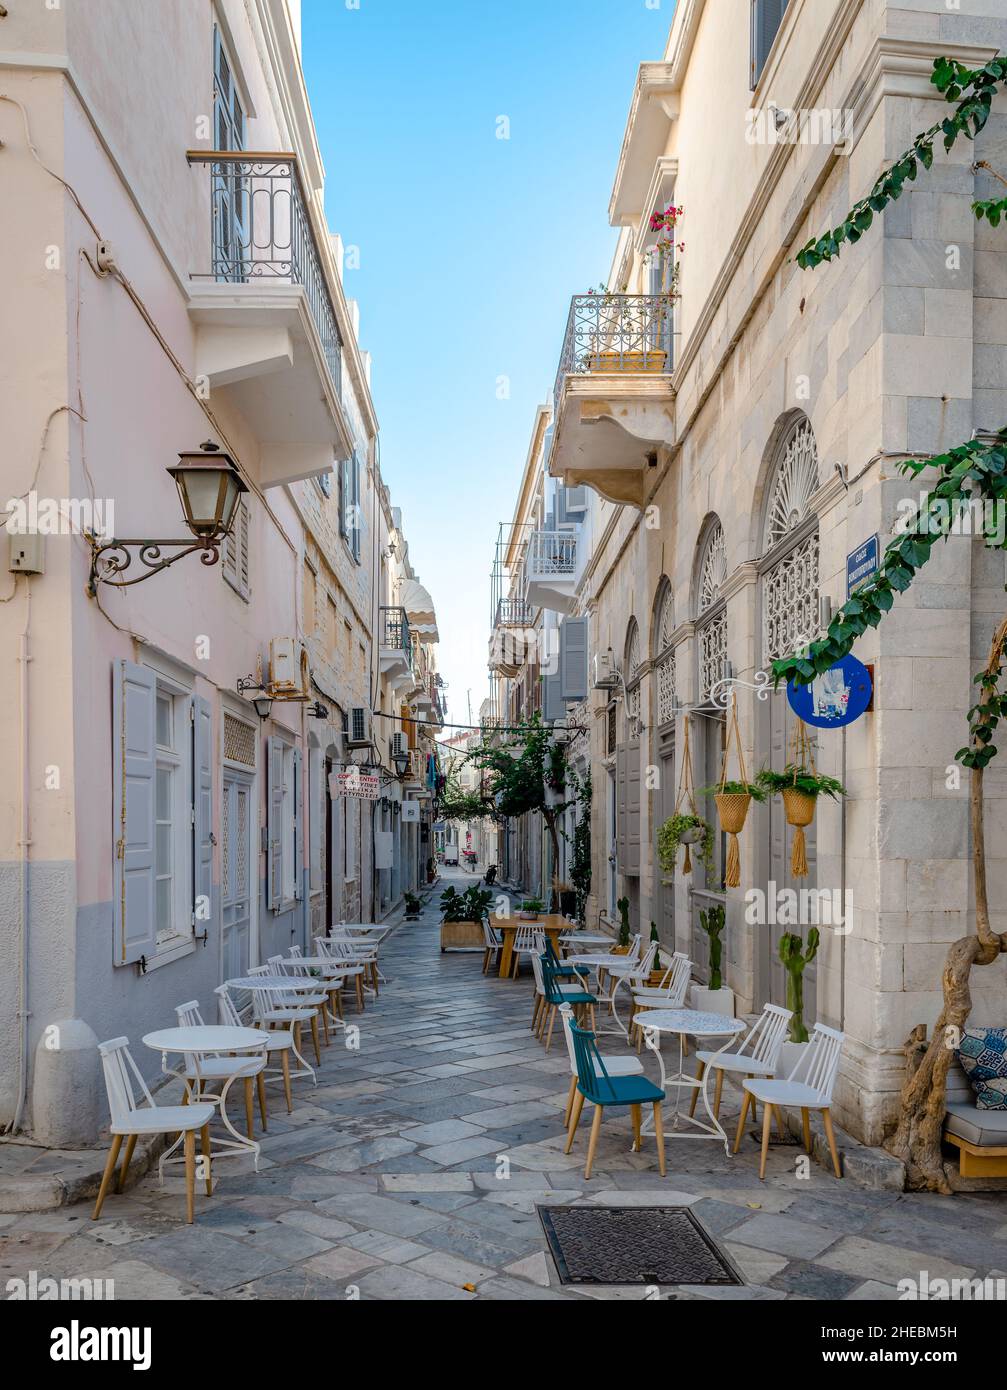 Ermoupolis, Grèce - septembre 18 2021 : cafés-terrasses dans les ruelles pavées de la capitale de Syros, une île grecque située dans la mer Égée. Banque D'Images